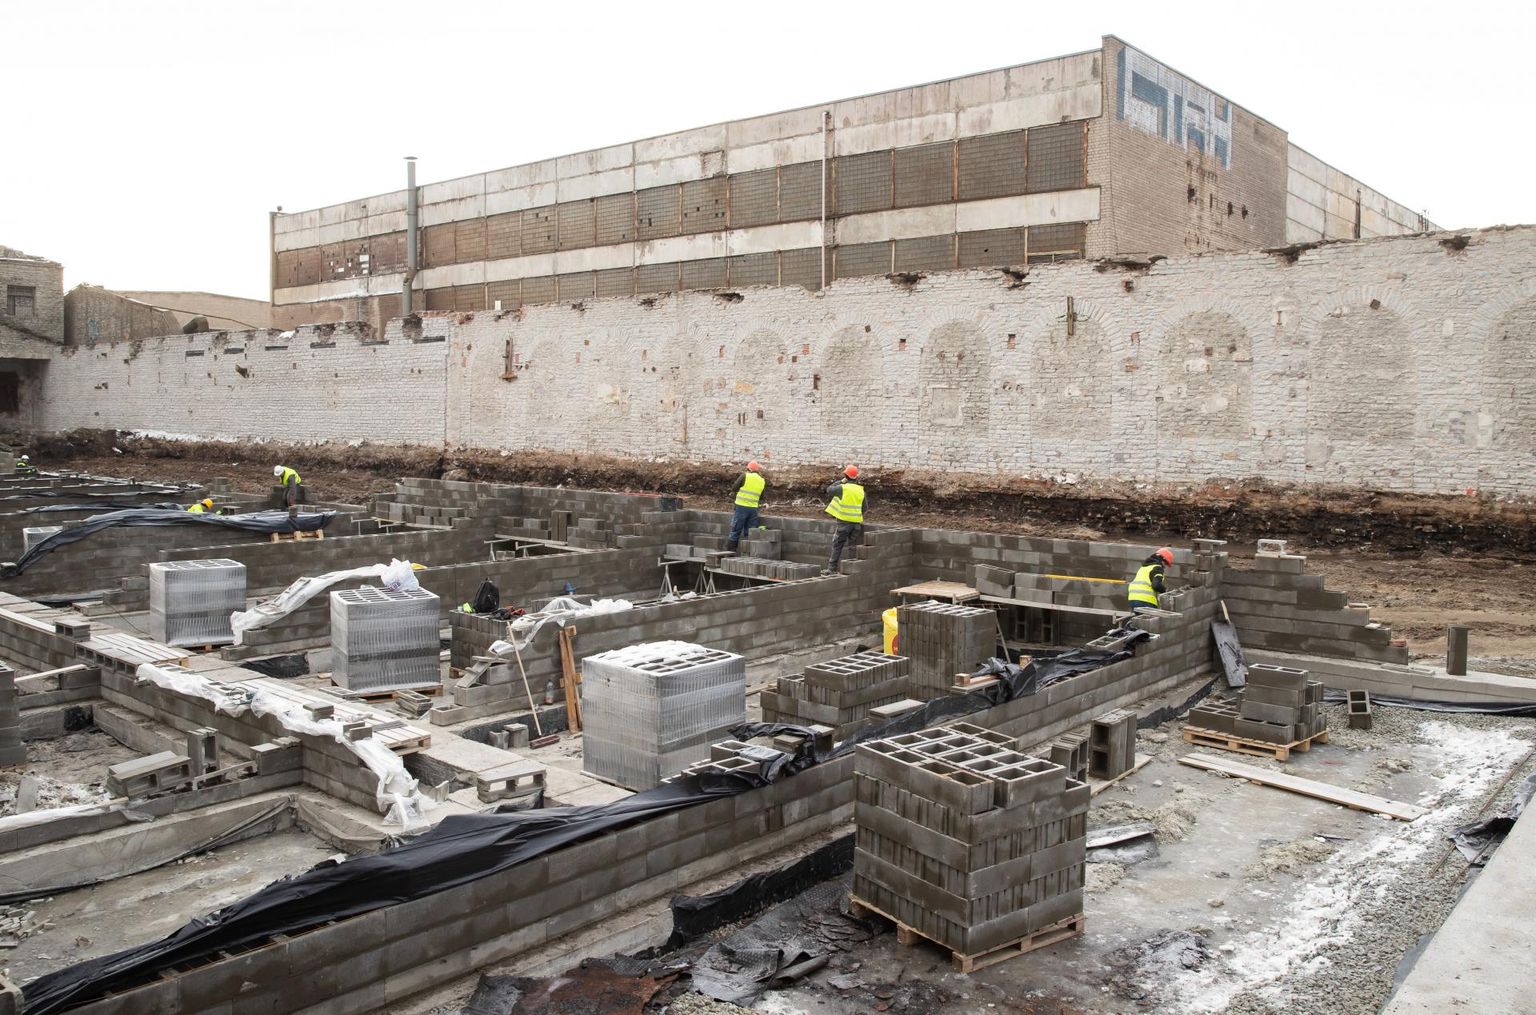 Volta kvartalis rajatakse vana tööstushoone müüride vahele elamispinnad.